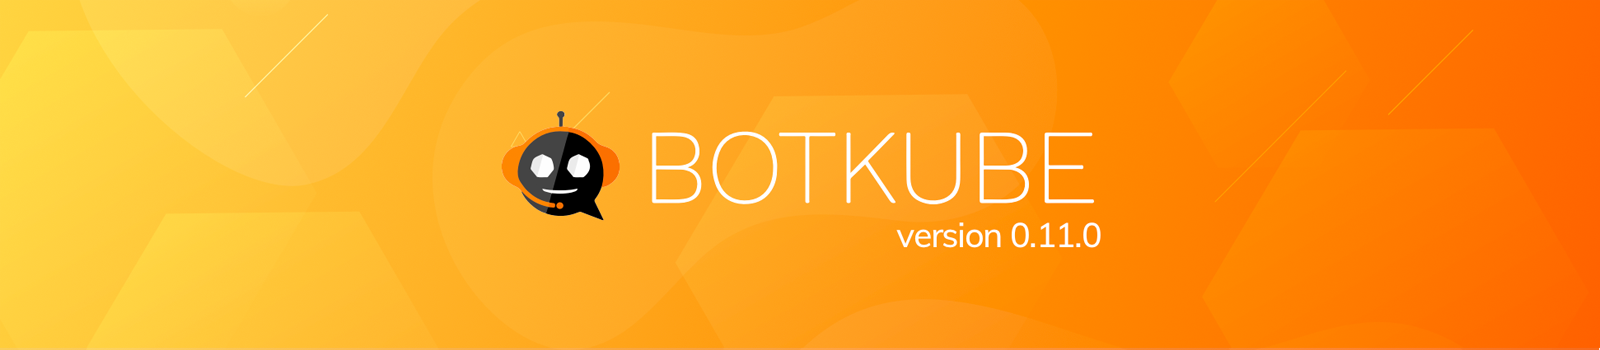 Announcing BotKube v0.11.0